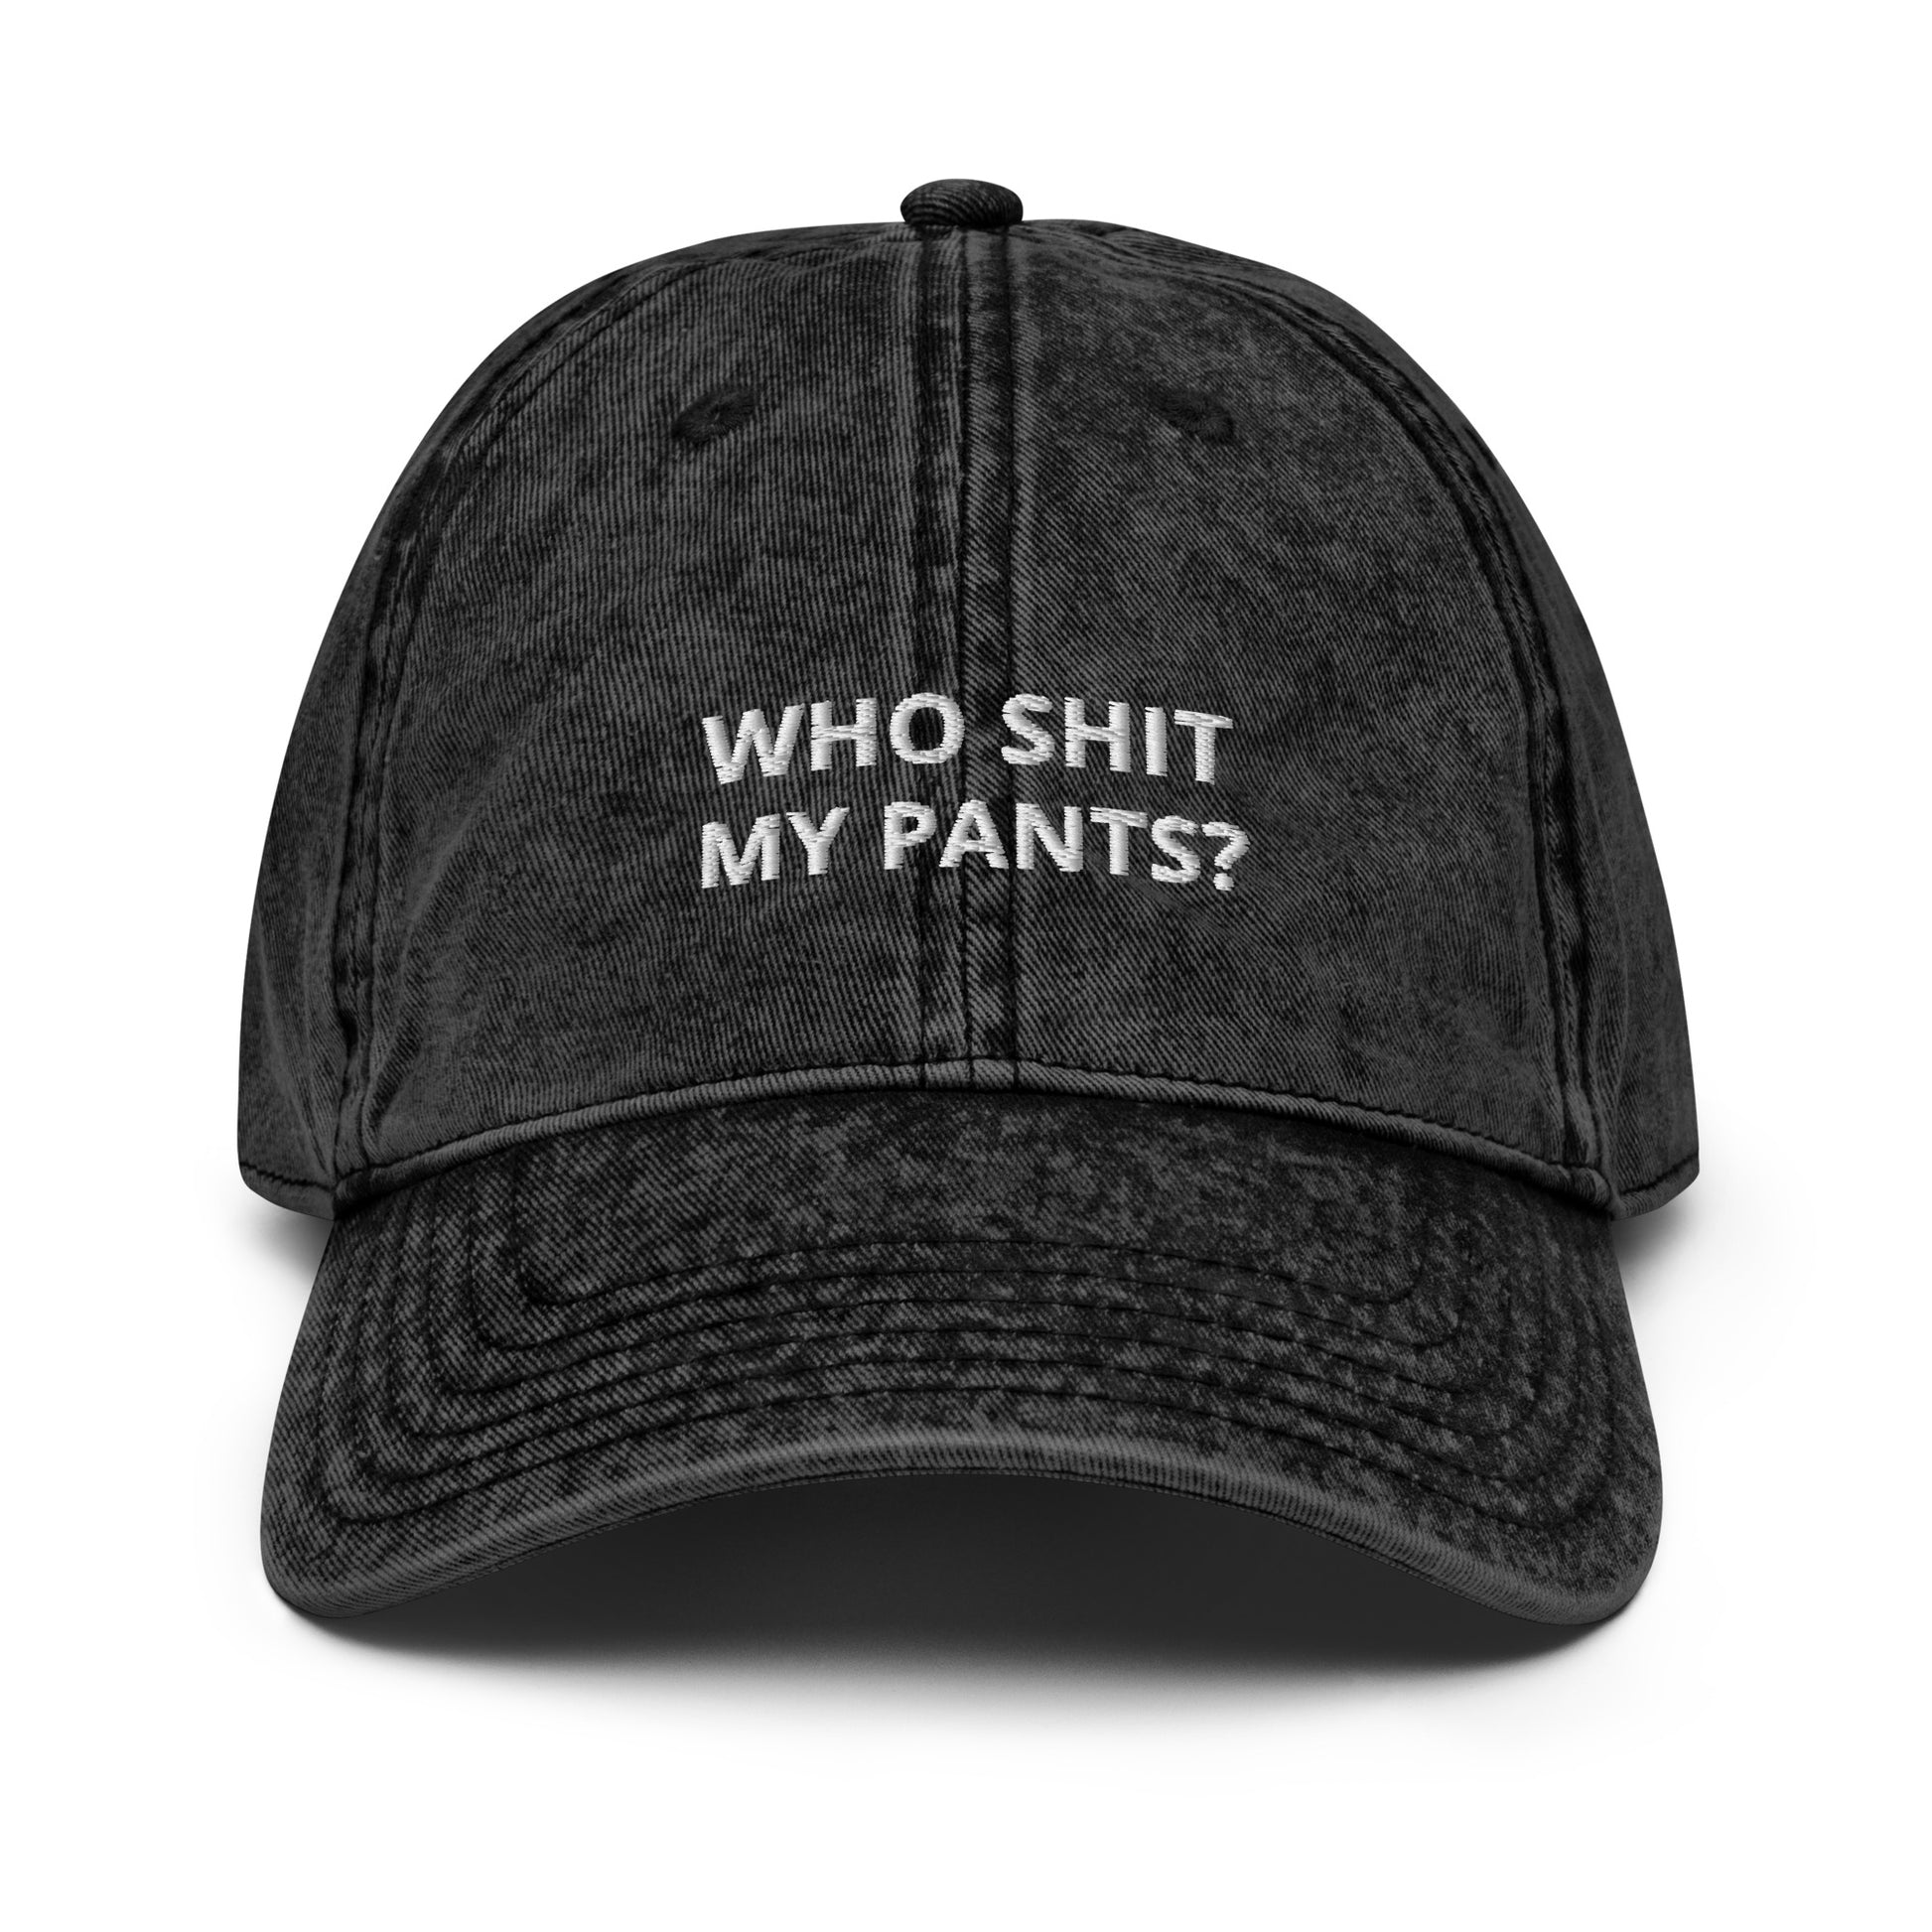 Produktbild einer Vintage-Cap mit der humorvollen Aufschrift 'WHO SHIT MY PANTS?' auf weißem Hintergrund. Ein Accessoire für Leute mit Sinn für Humor.